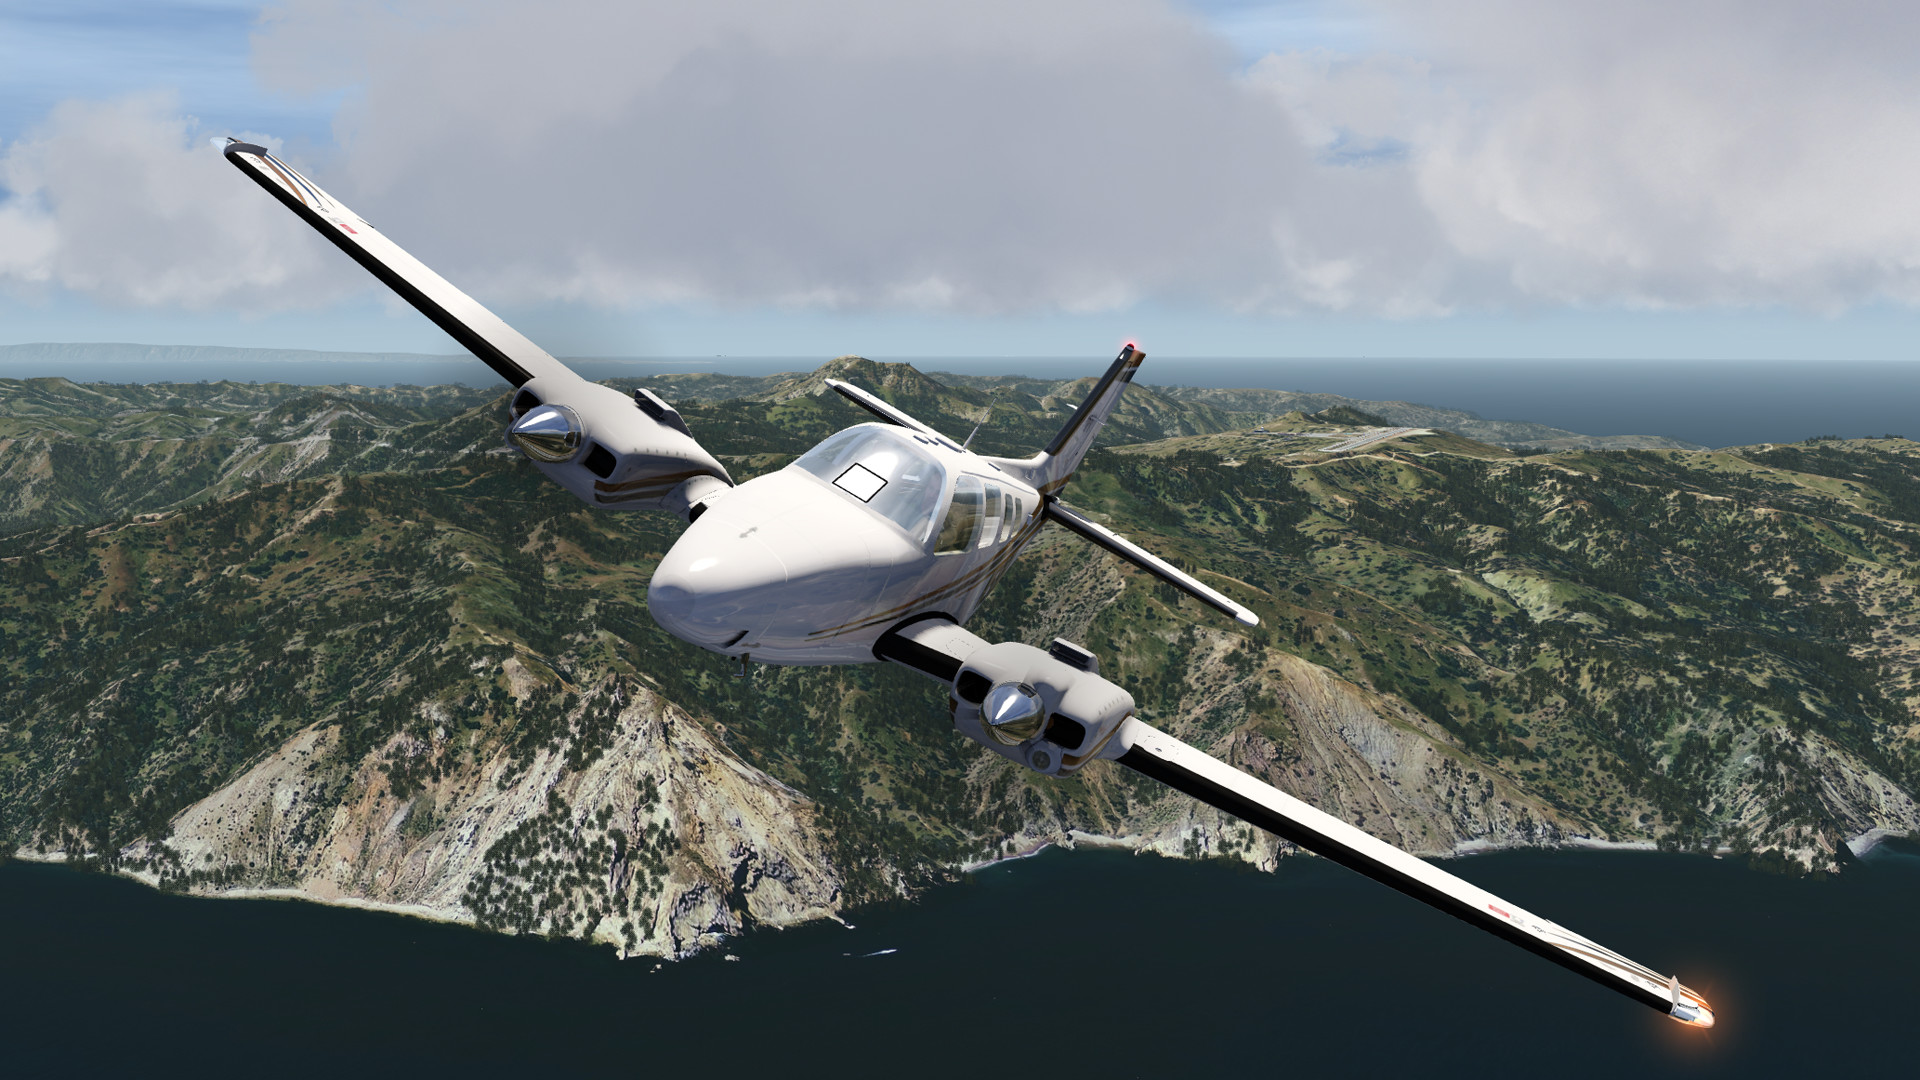 aerofly fs 2 flight simulator steam unlocked